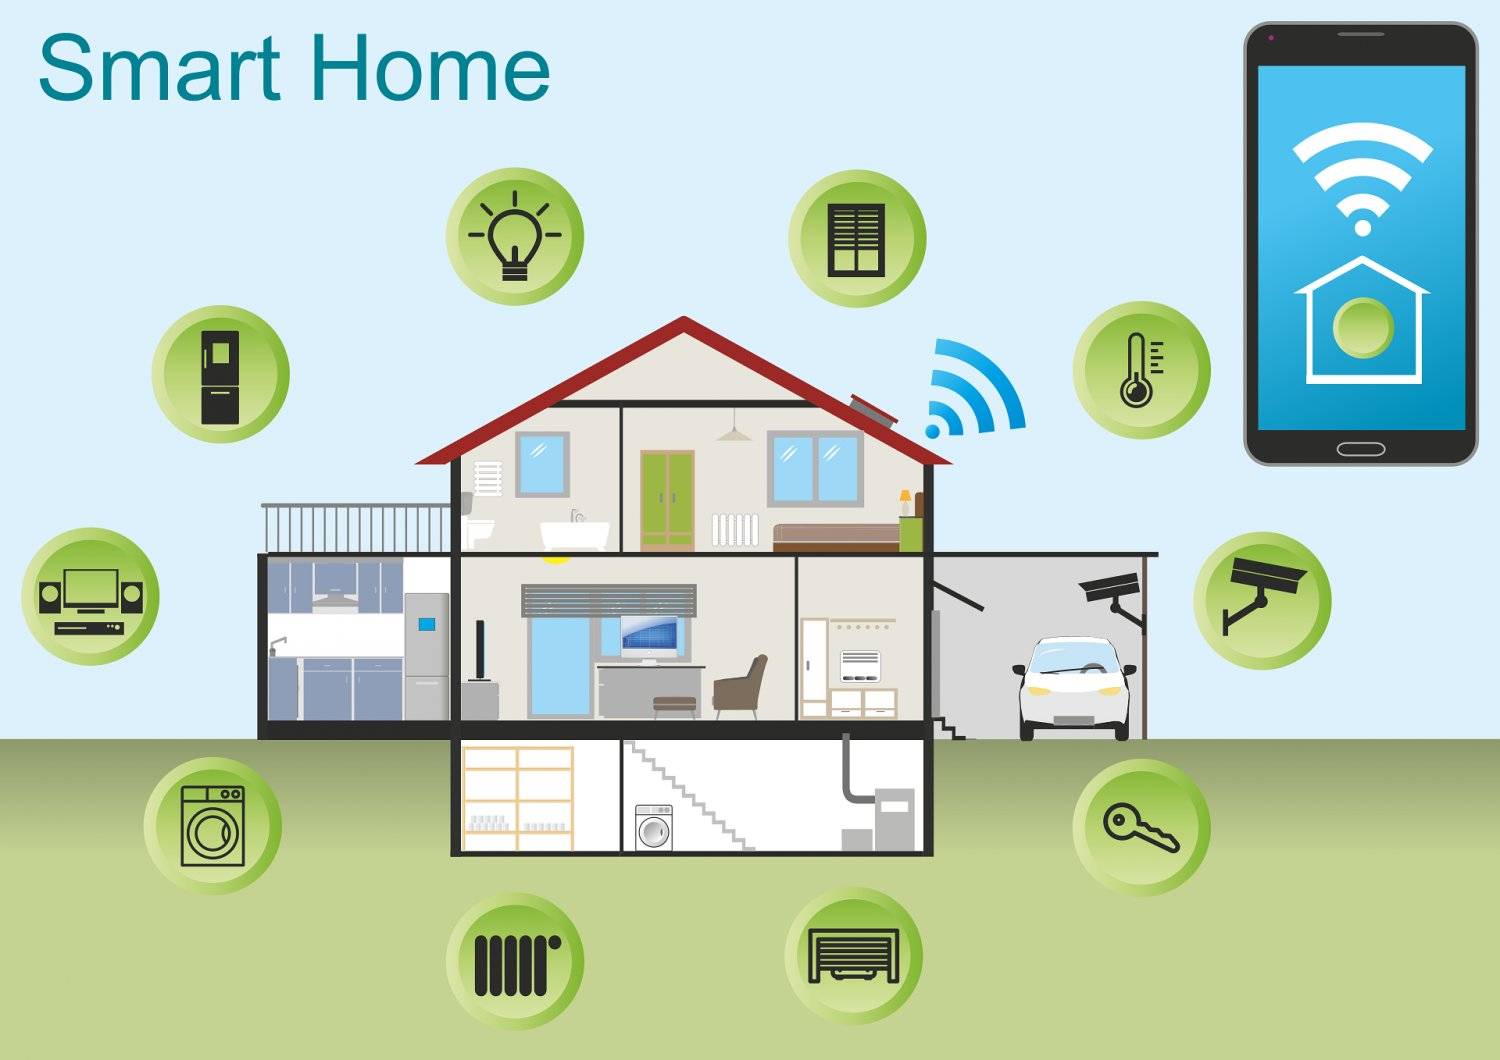 Smart Home: energieeffizient und mehr